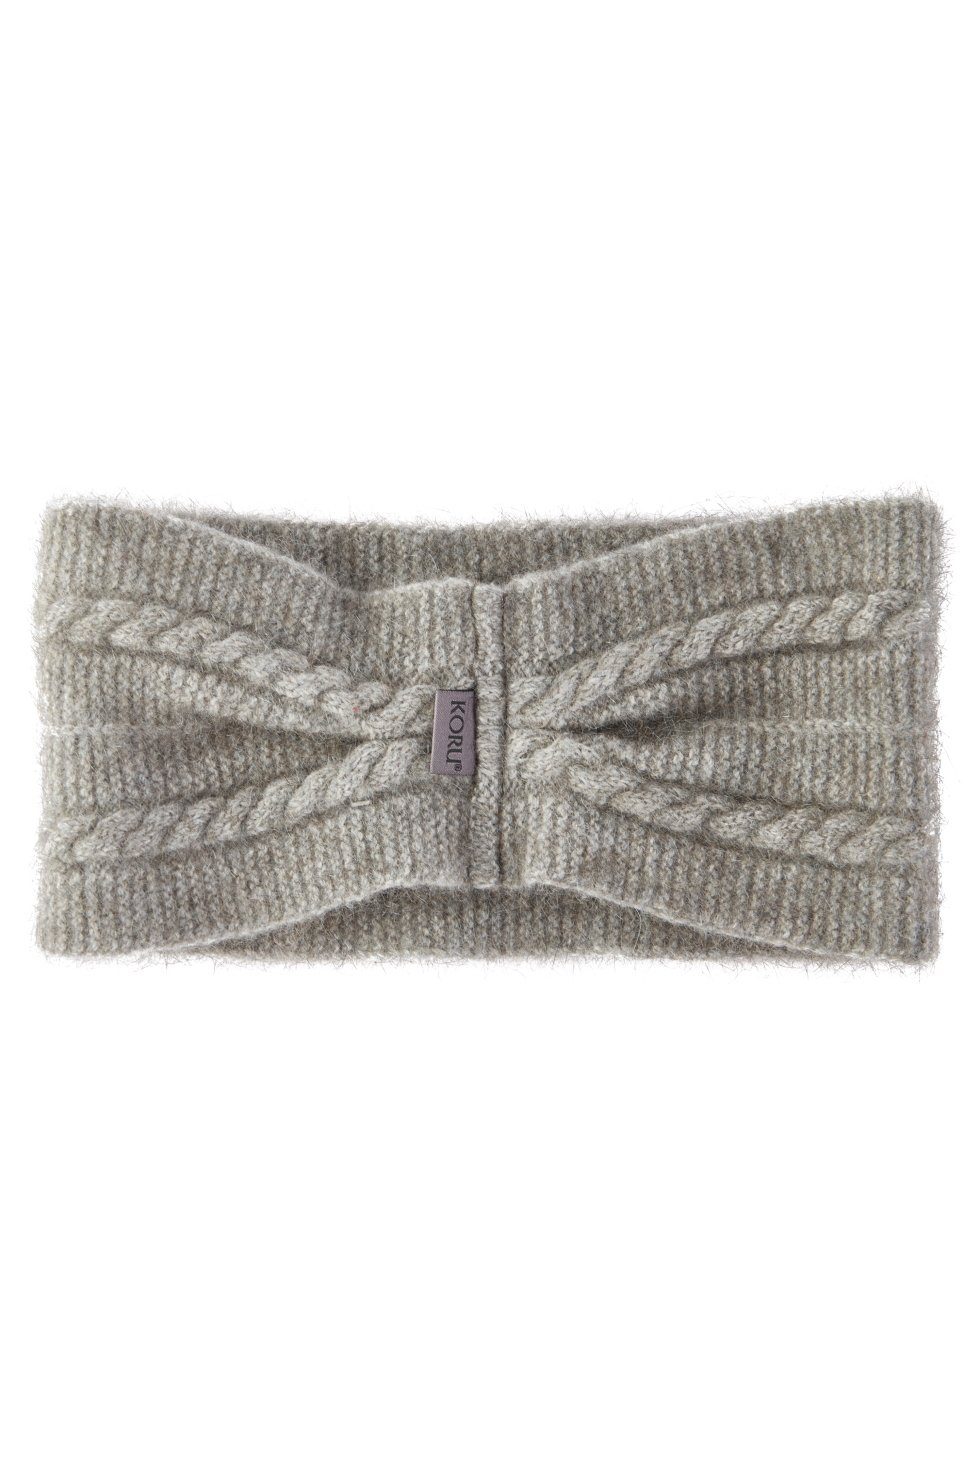 Koru Knitwear Stirnband Possum Merino Zopfmuster Stirnband aus der Possumhaarfaser mist | Stirnbänder